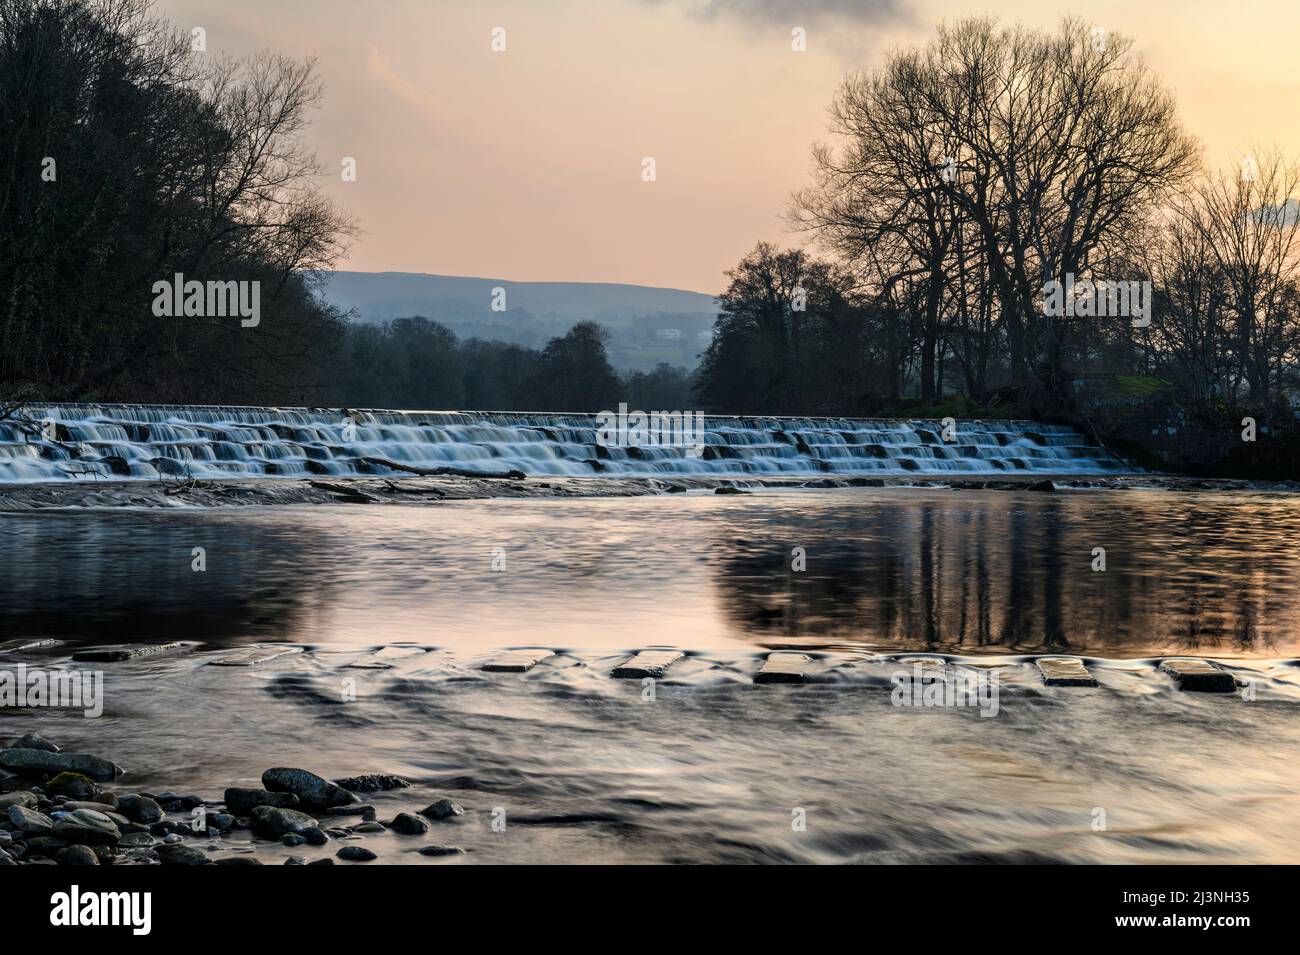 Paesaggio rurale panoramico (acqua che scorre su gradini di tramezzini, pietre a passo che attraversano luogo) - River Wharfe, Burley a Wharfedale, Yorkshire, Inghilterra, Regno Unito. Foto Stock